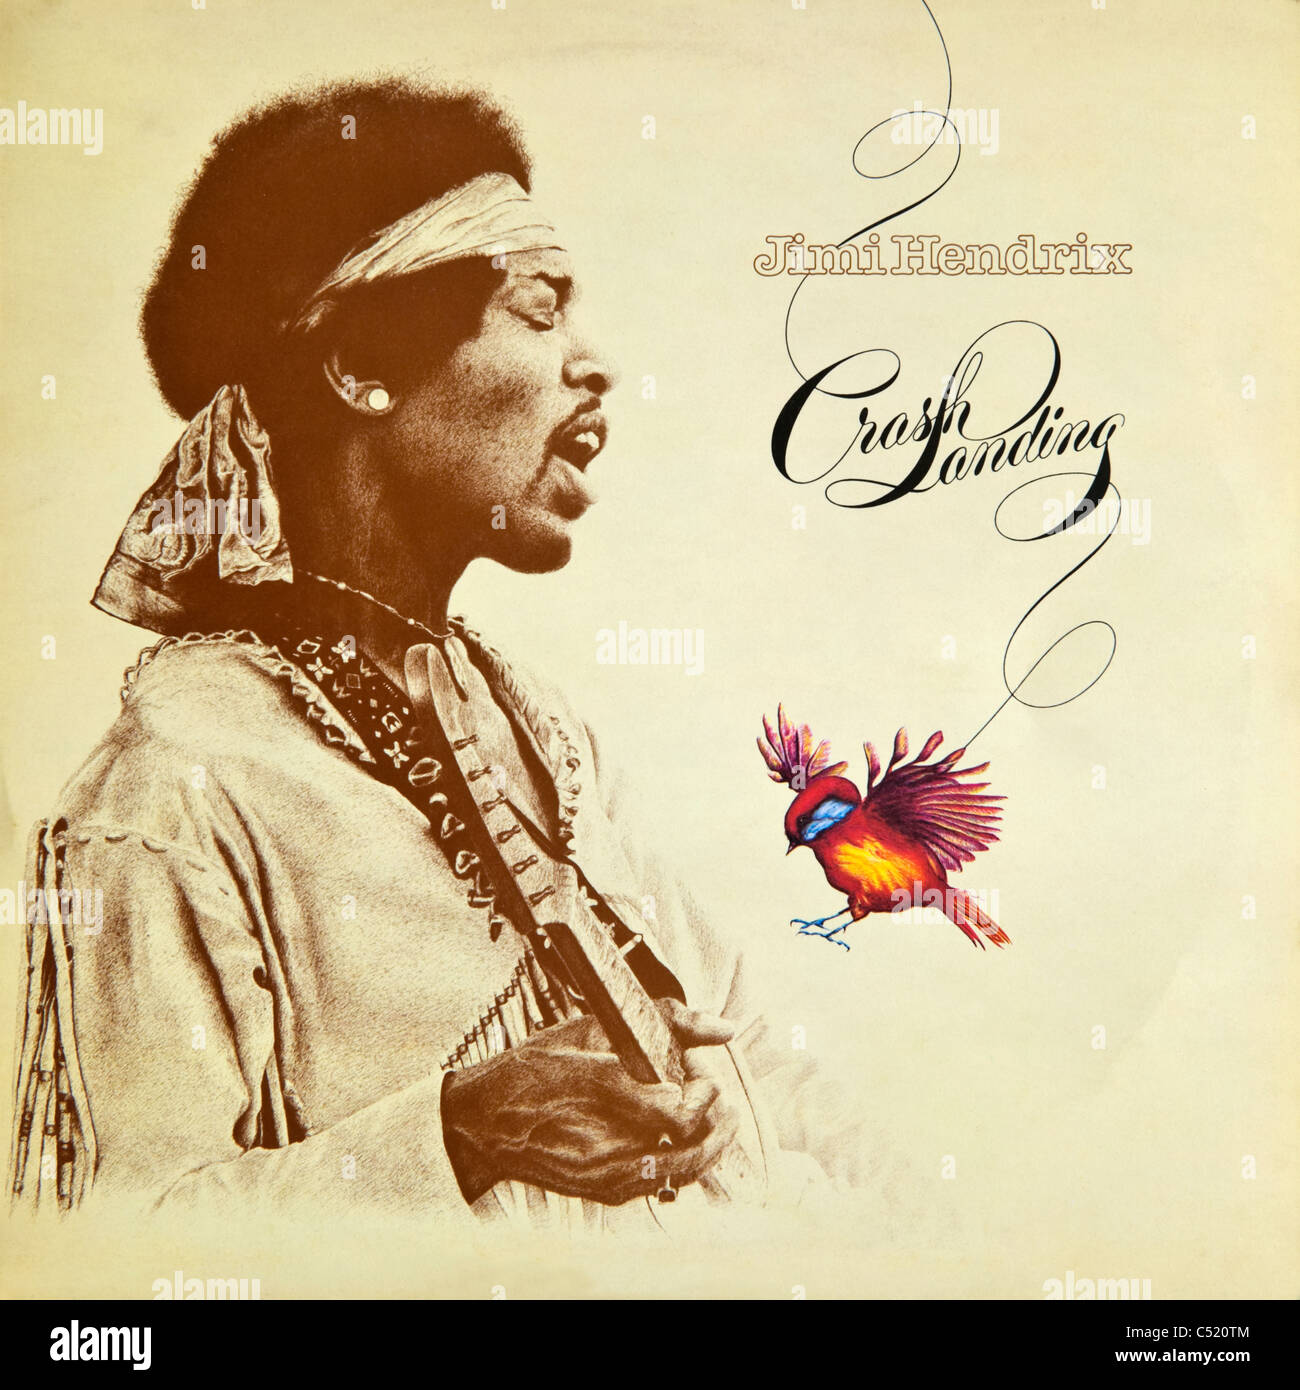 Copertina di album in vinile Crash di Jimi Hendrix rilasciato 1975 sulla critica Polydor Records Foto Stock